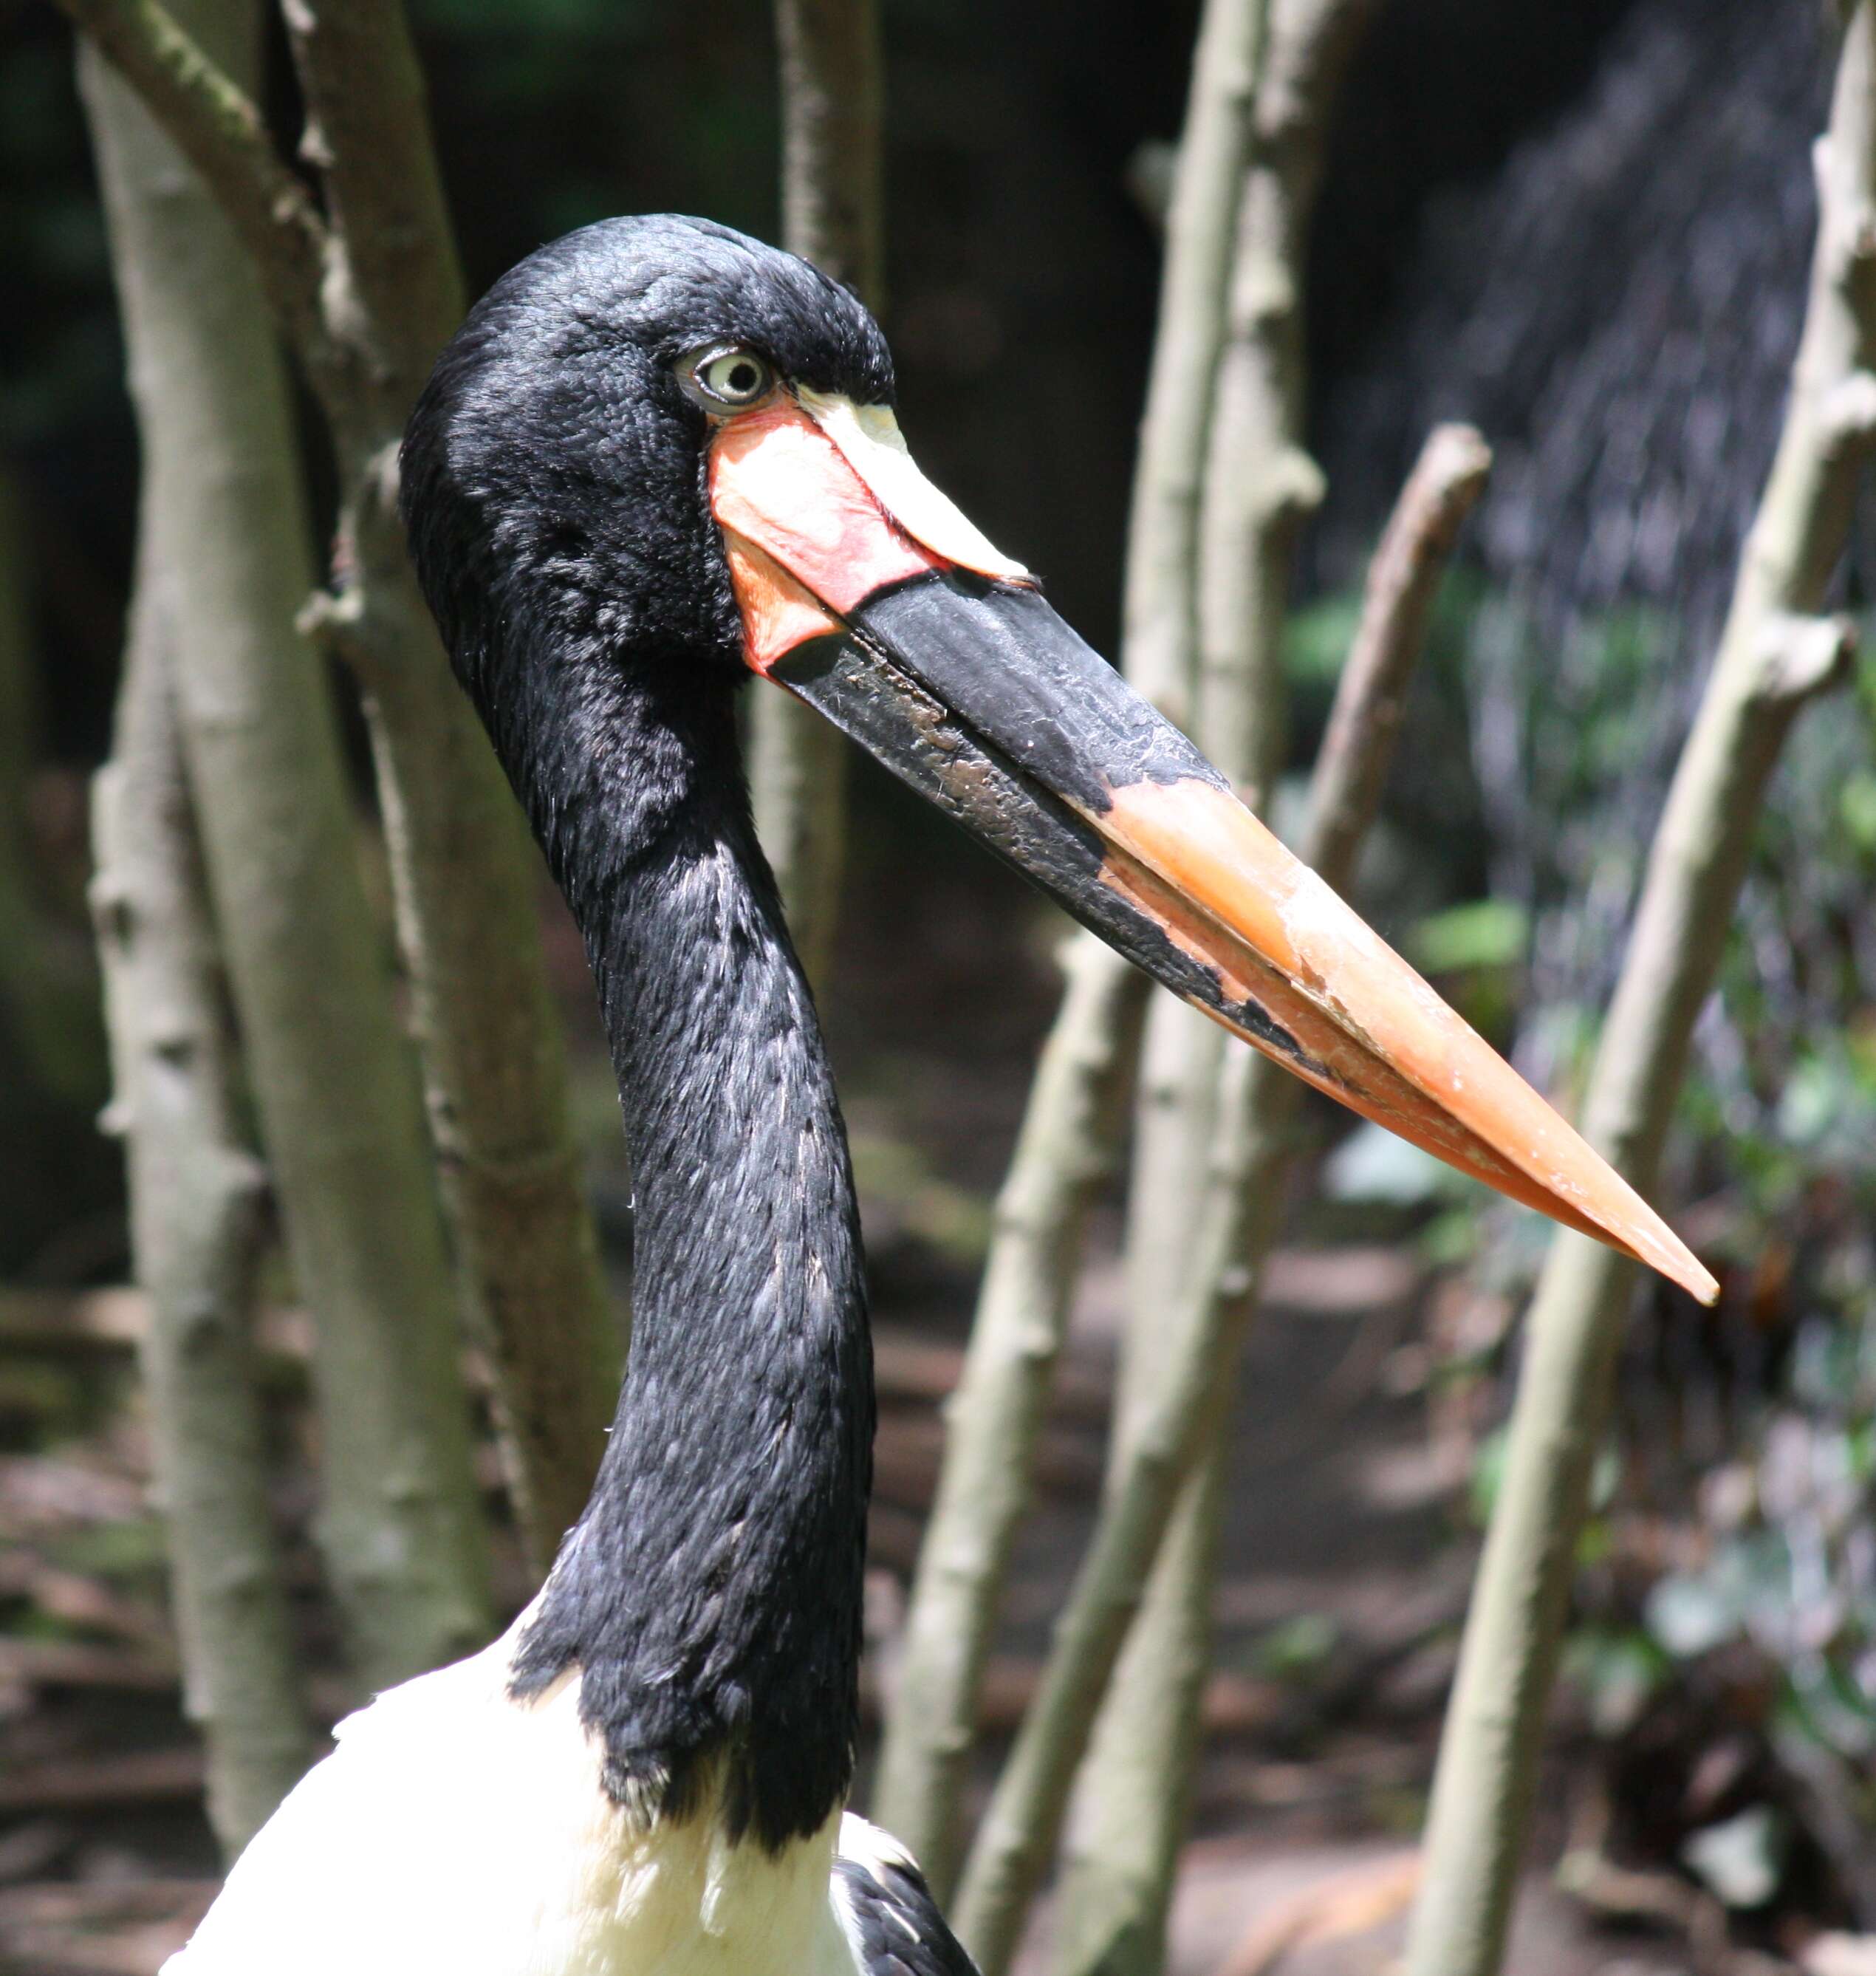 Image of Saddle-billed Stork